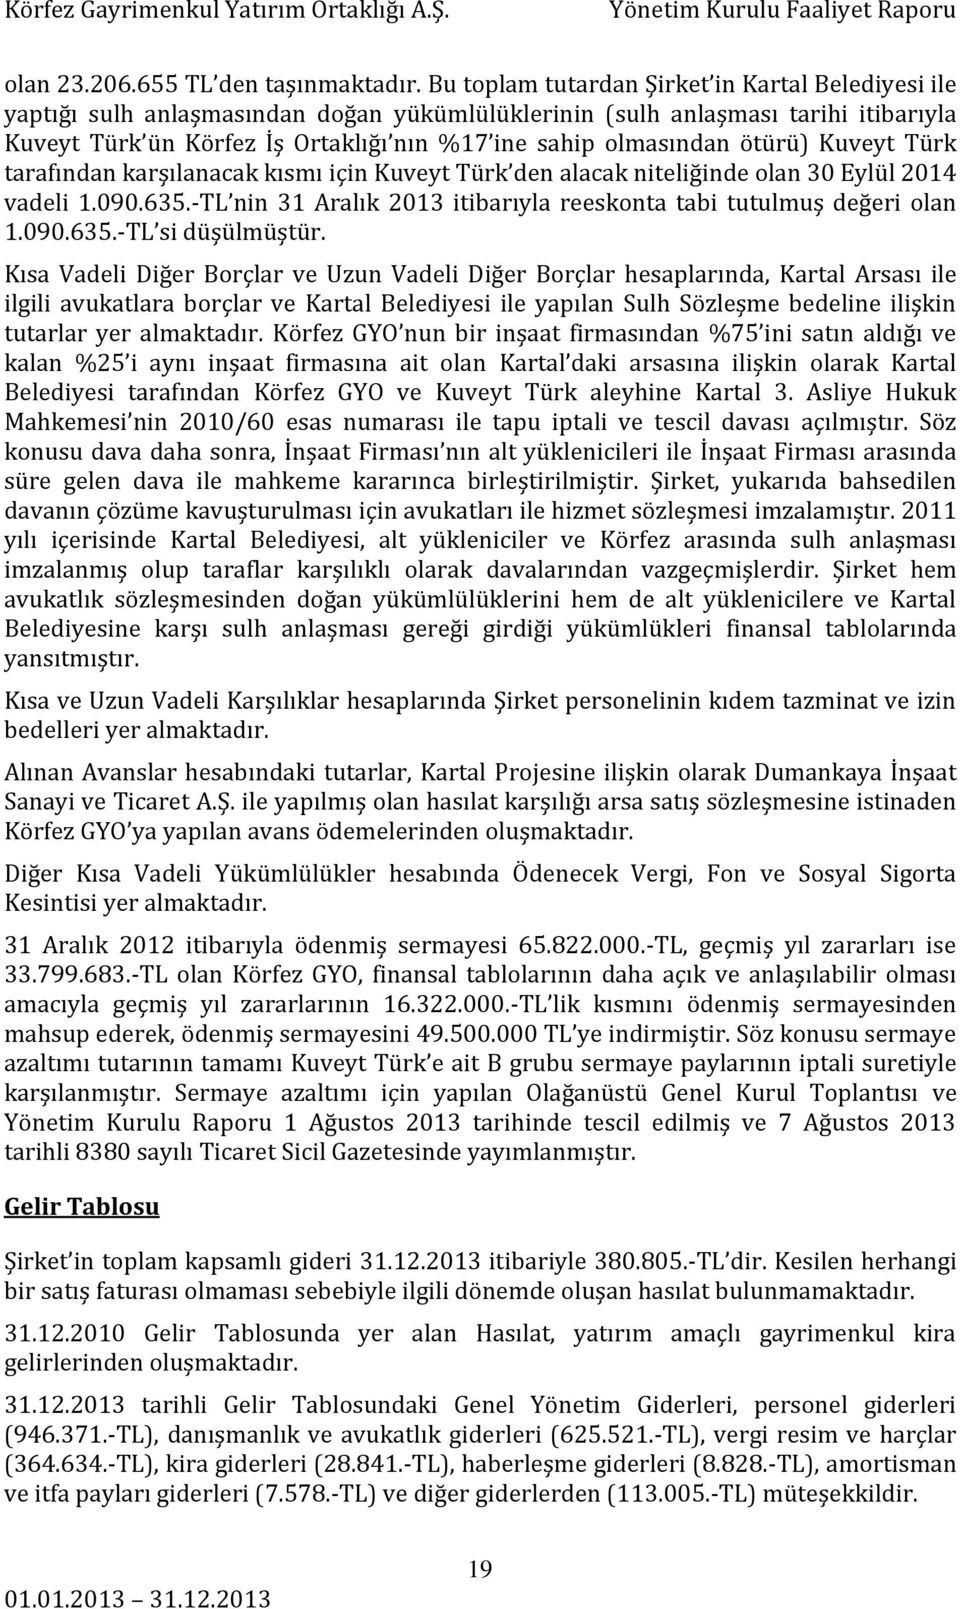 ötürü) Kuveyt Türk tarafından karşılanacak kısmı için Kuveyt Türk den alacak niteliğinde olan 30 Eylül 2014 vadeli 1.090.635.-TL nin 31 Aralık 2013 itibarıyla reeskonta tabi tutulmuş değeri olan 1.